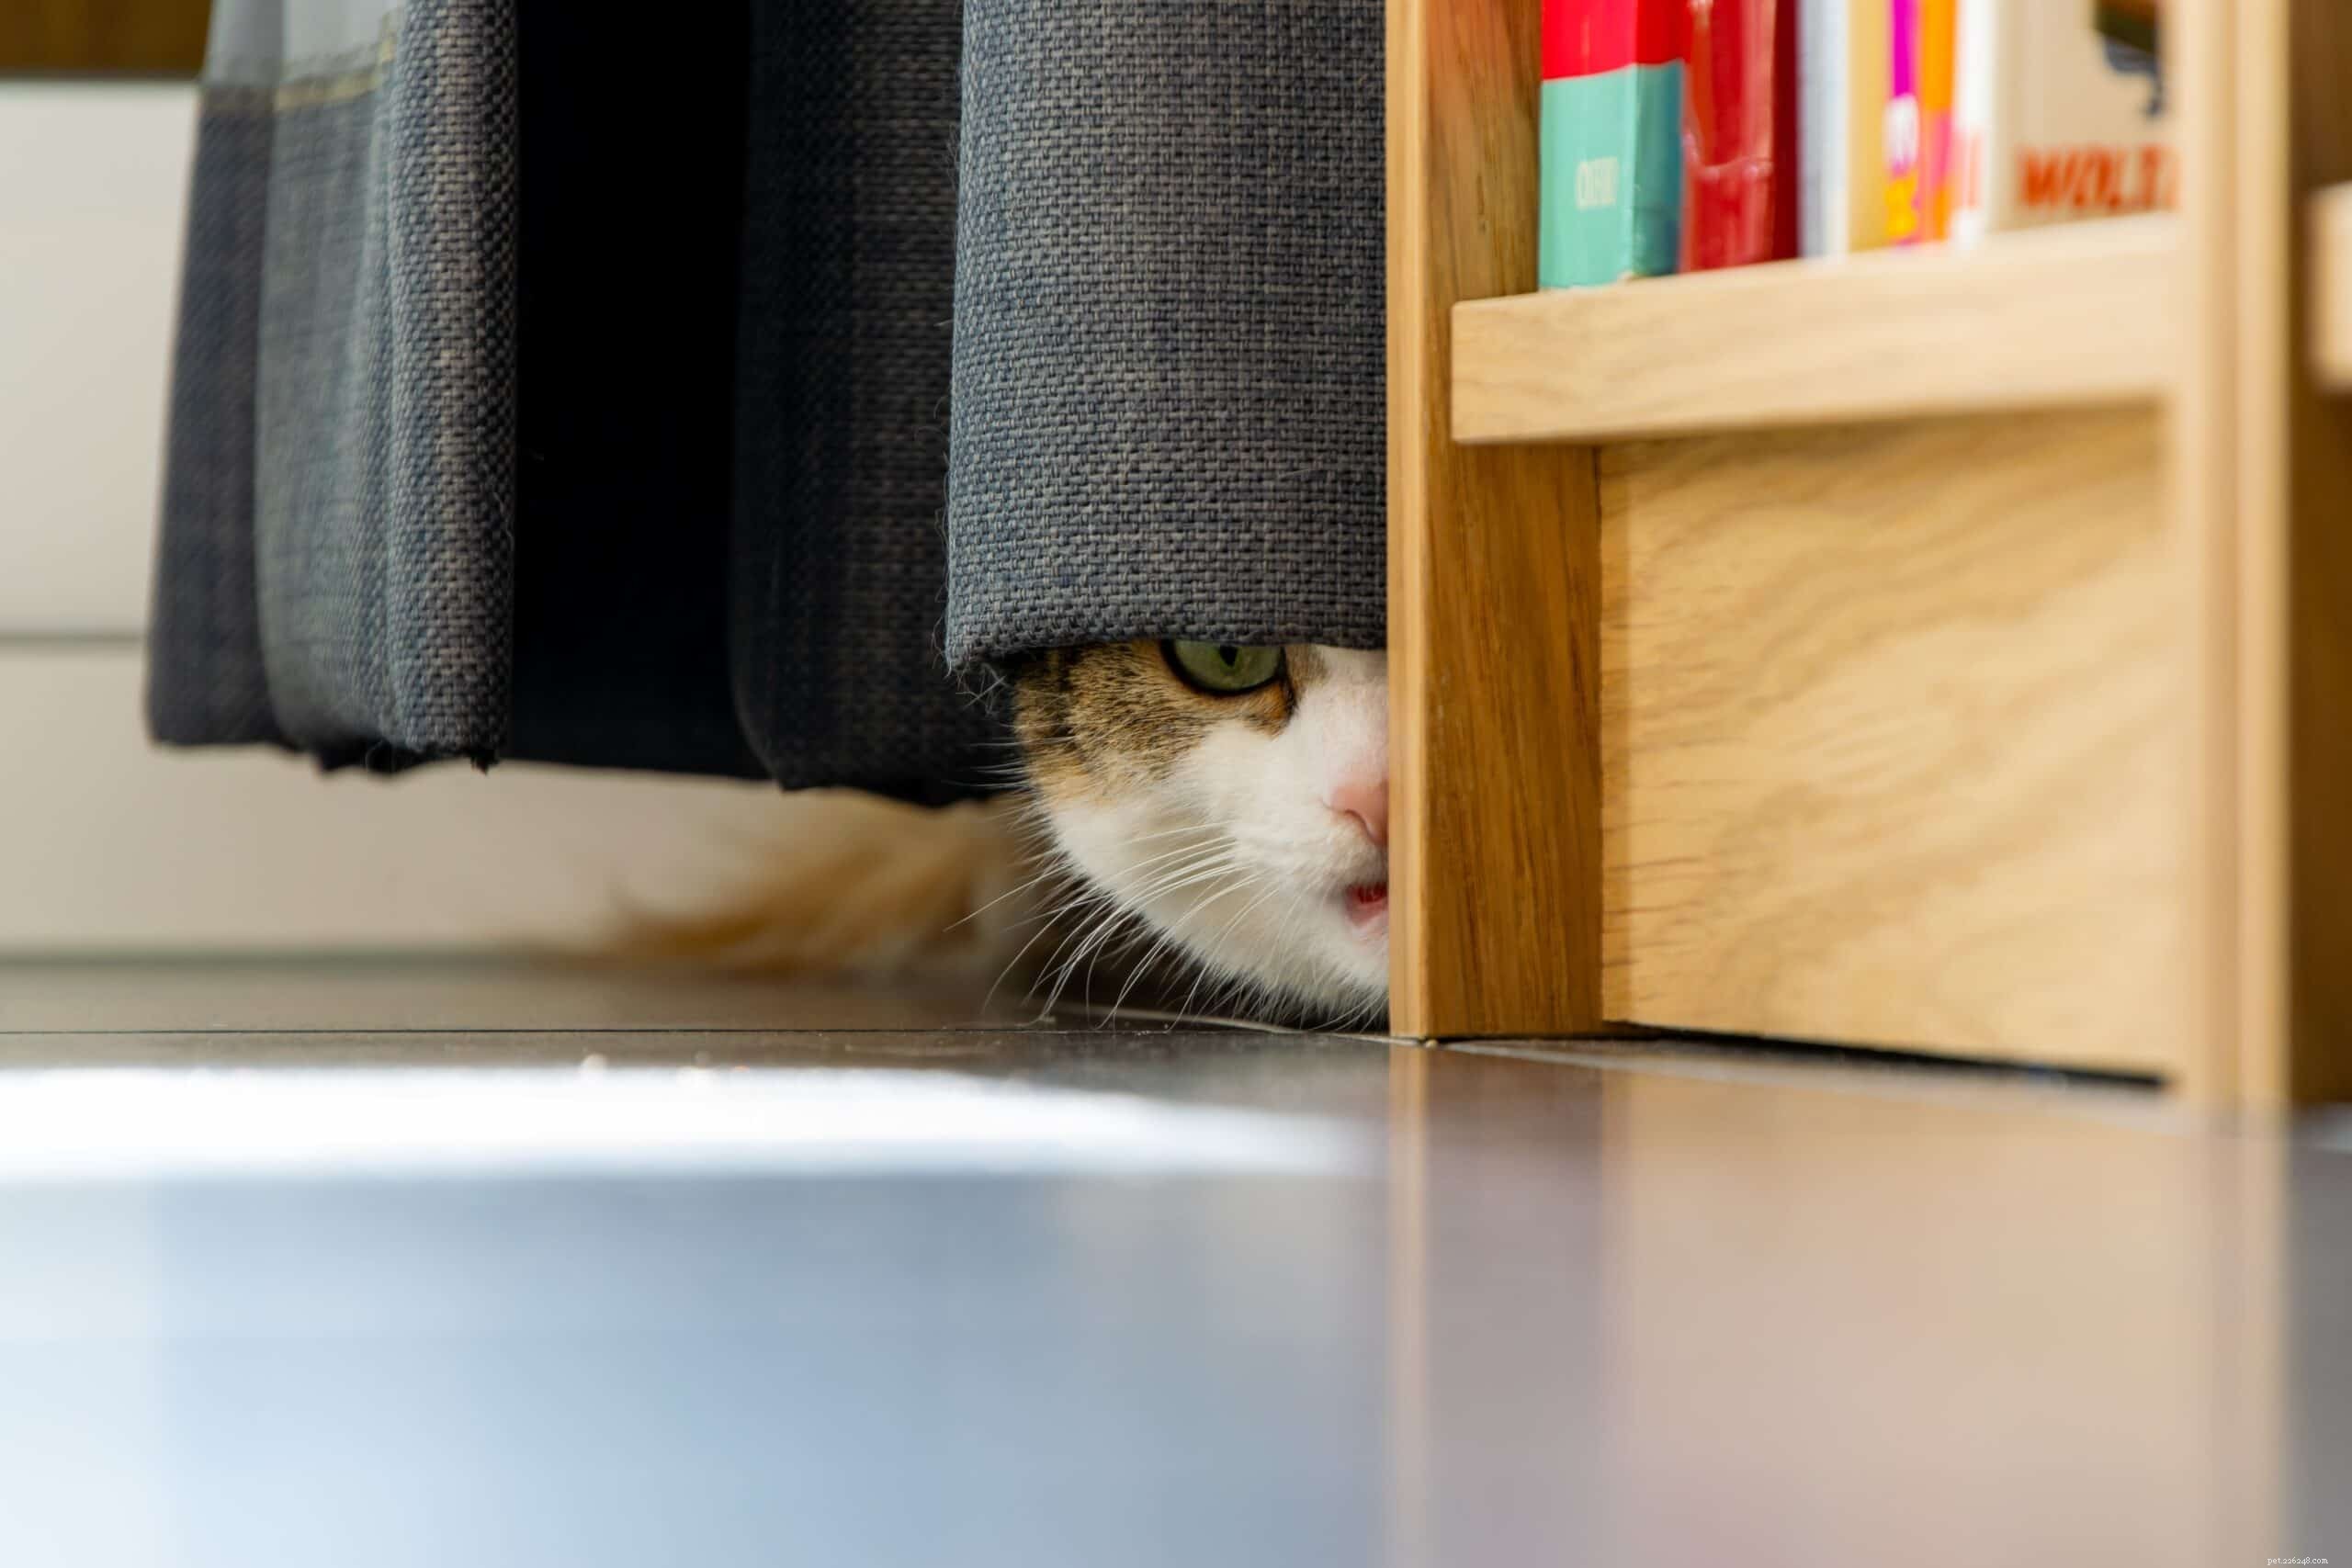 Perché i gatti hanno paura dei rumori forti?